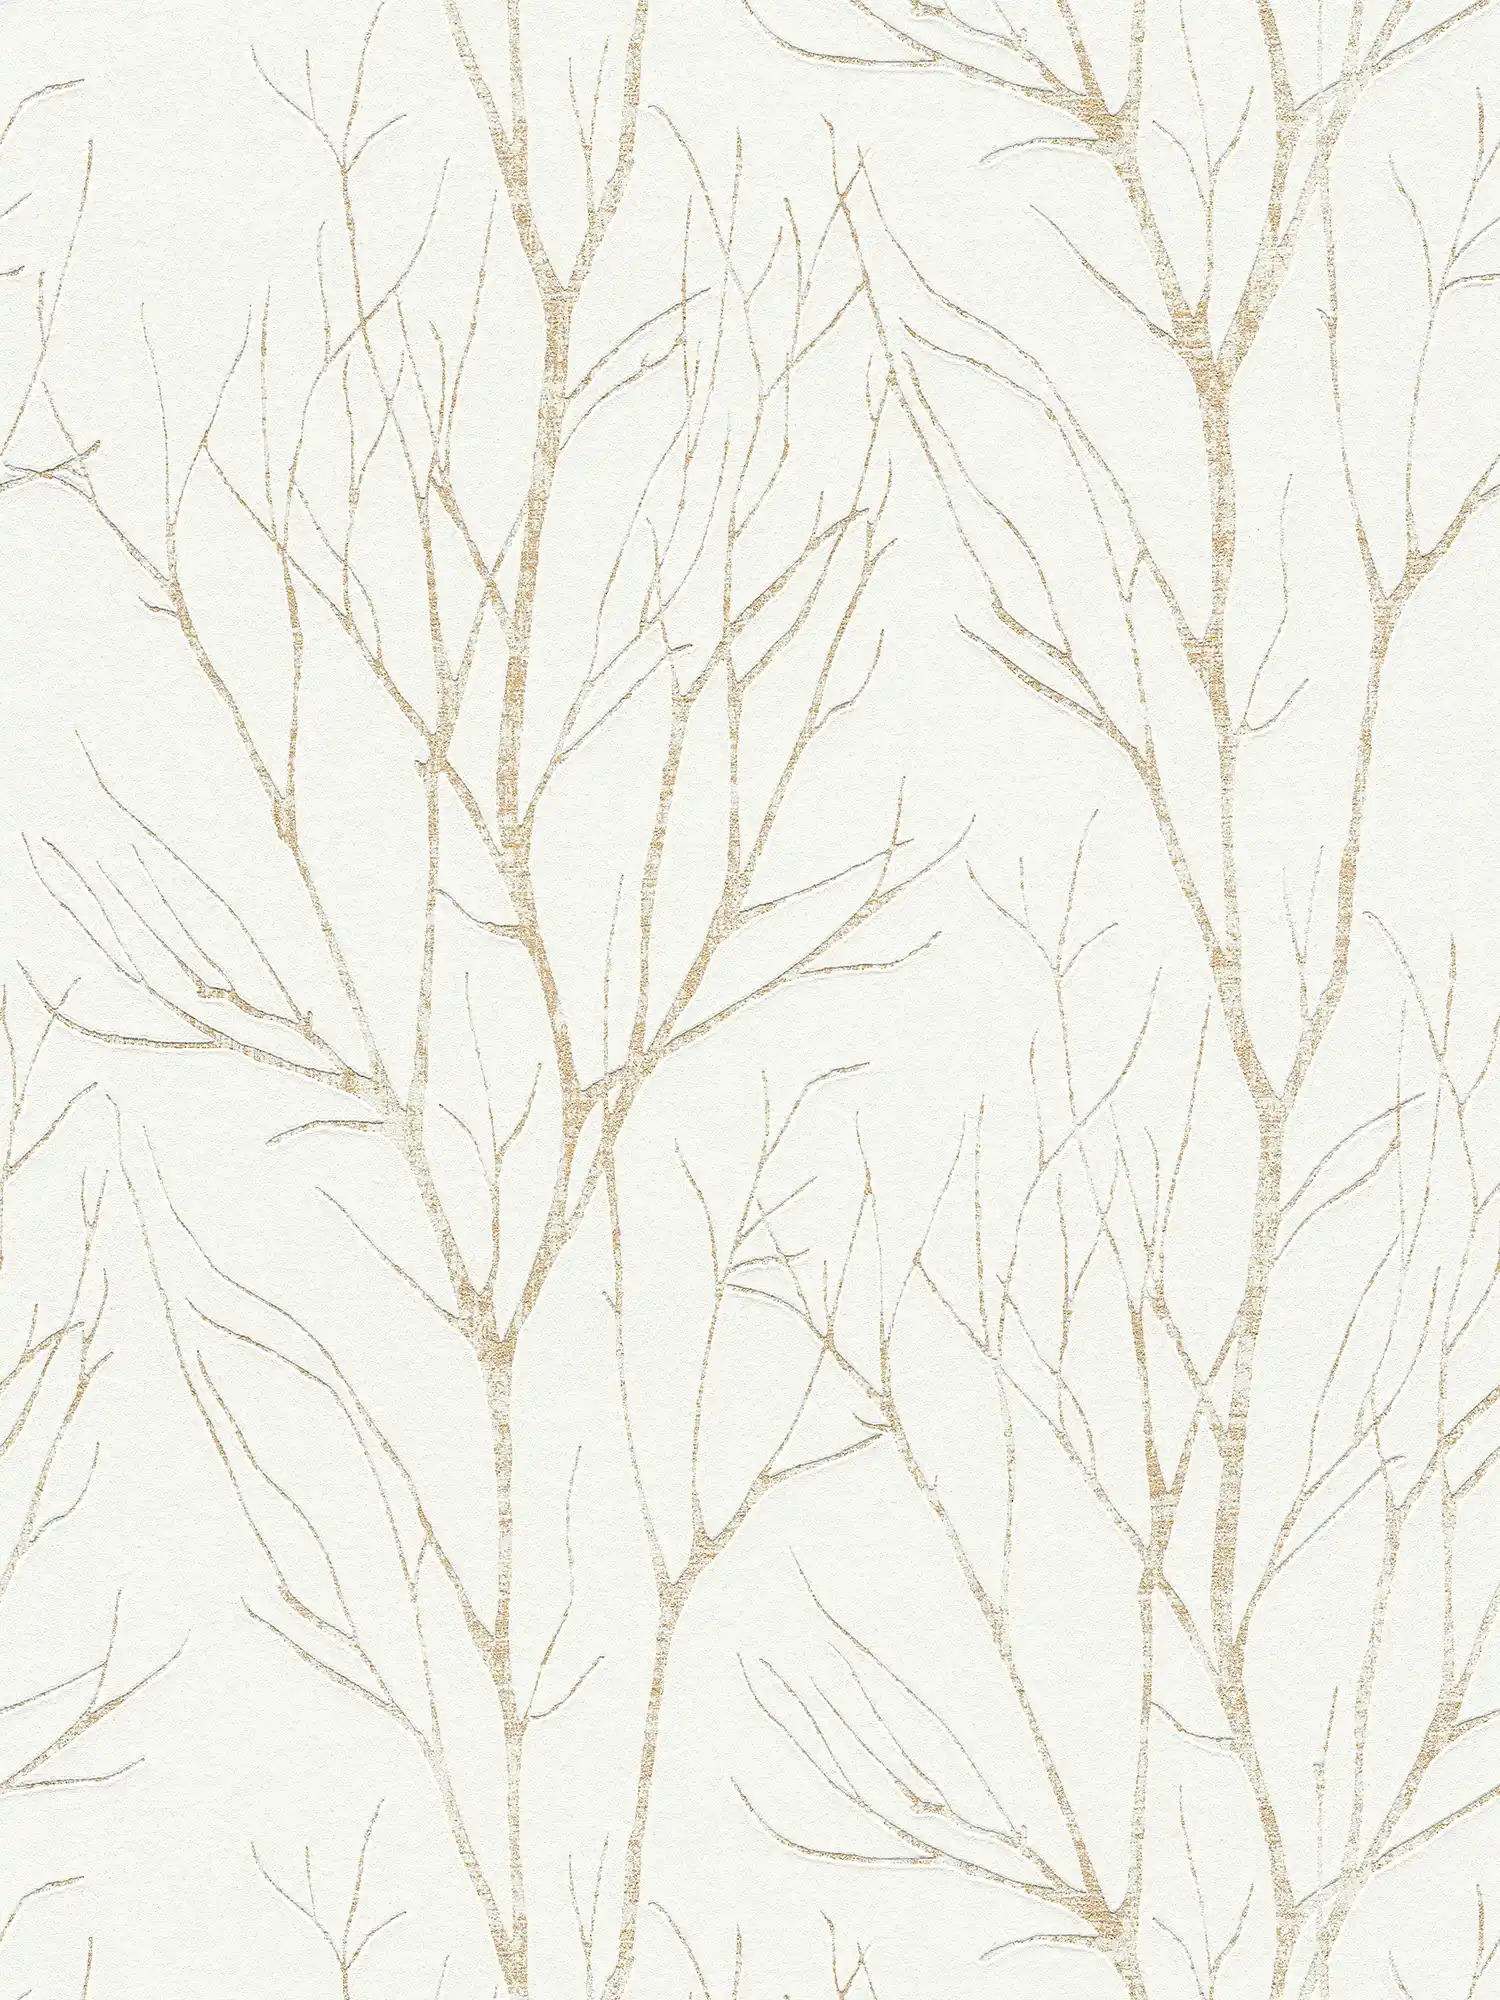         Papier peint intissé motif arbre & effet métallique - beige, crème, métallique
    